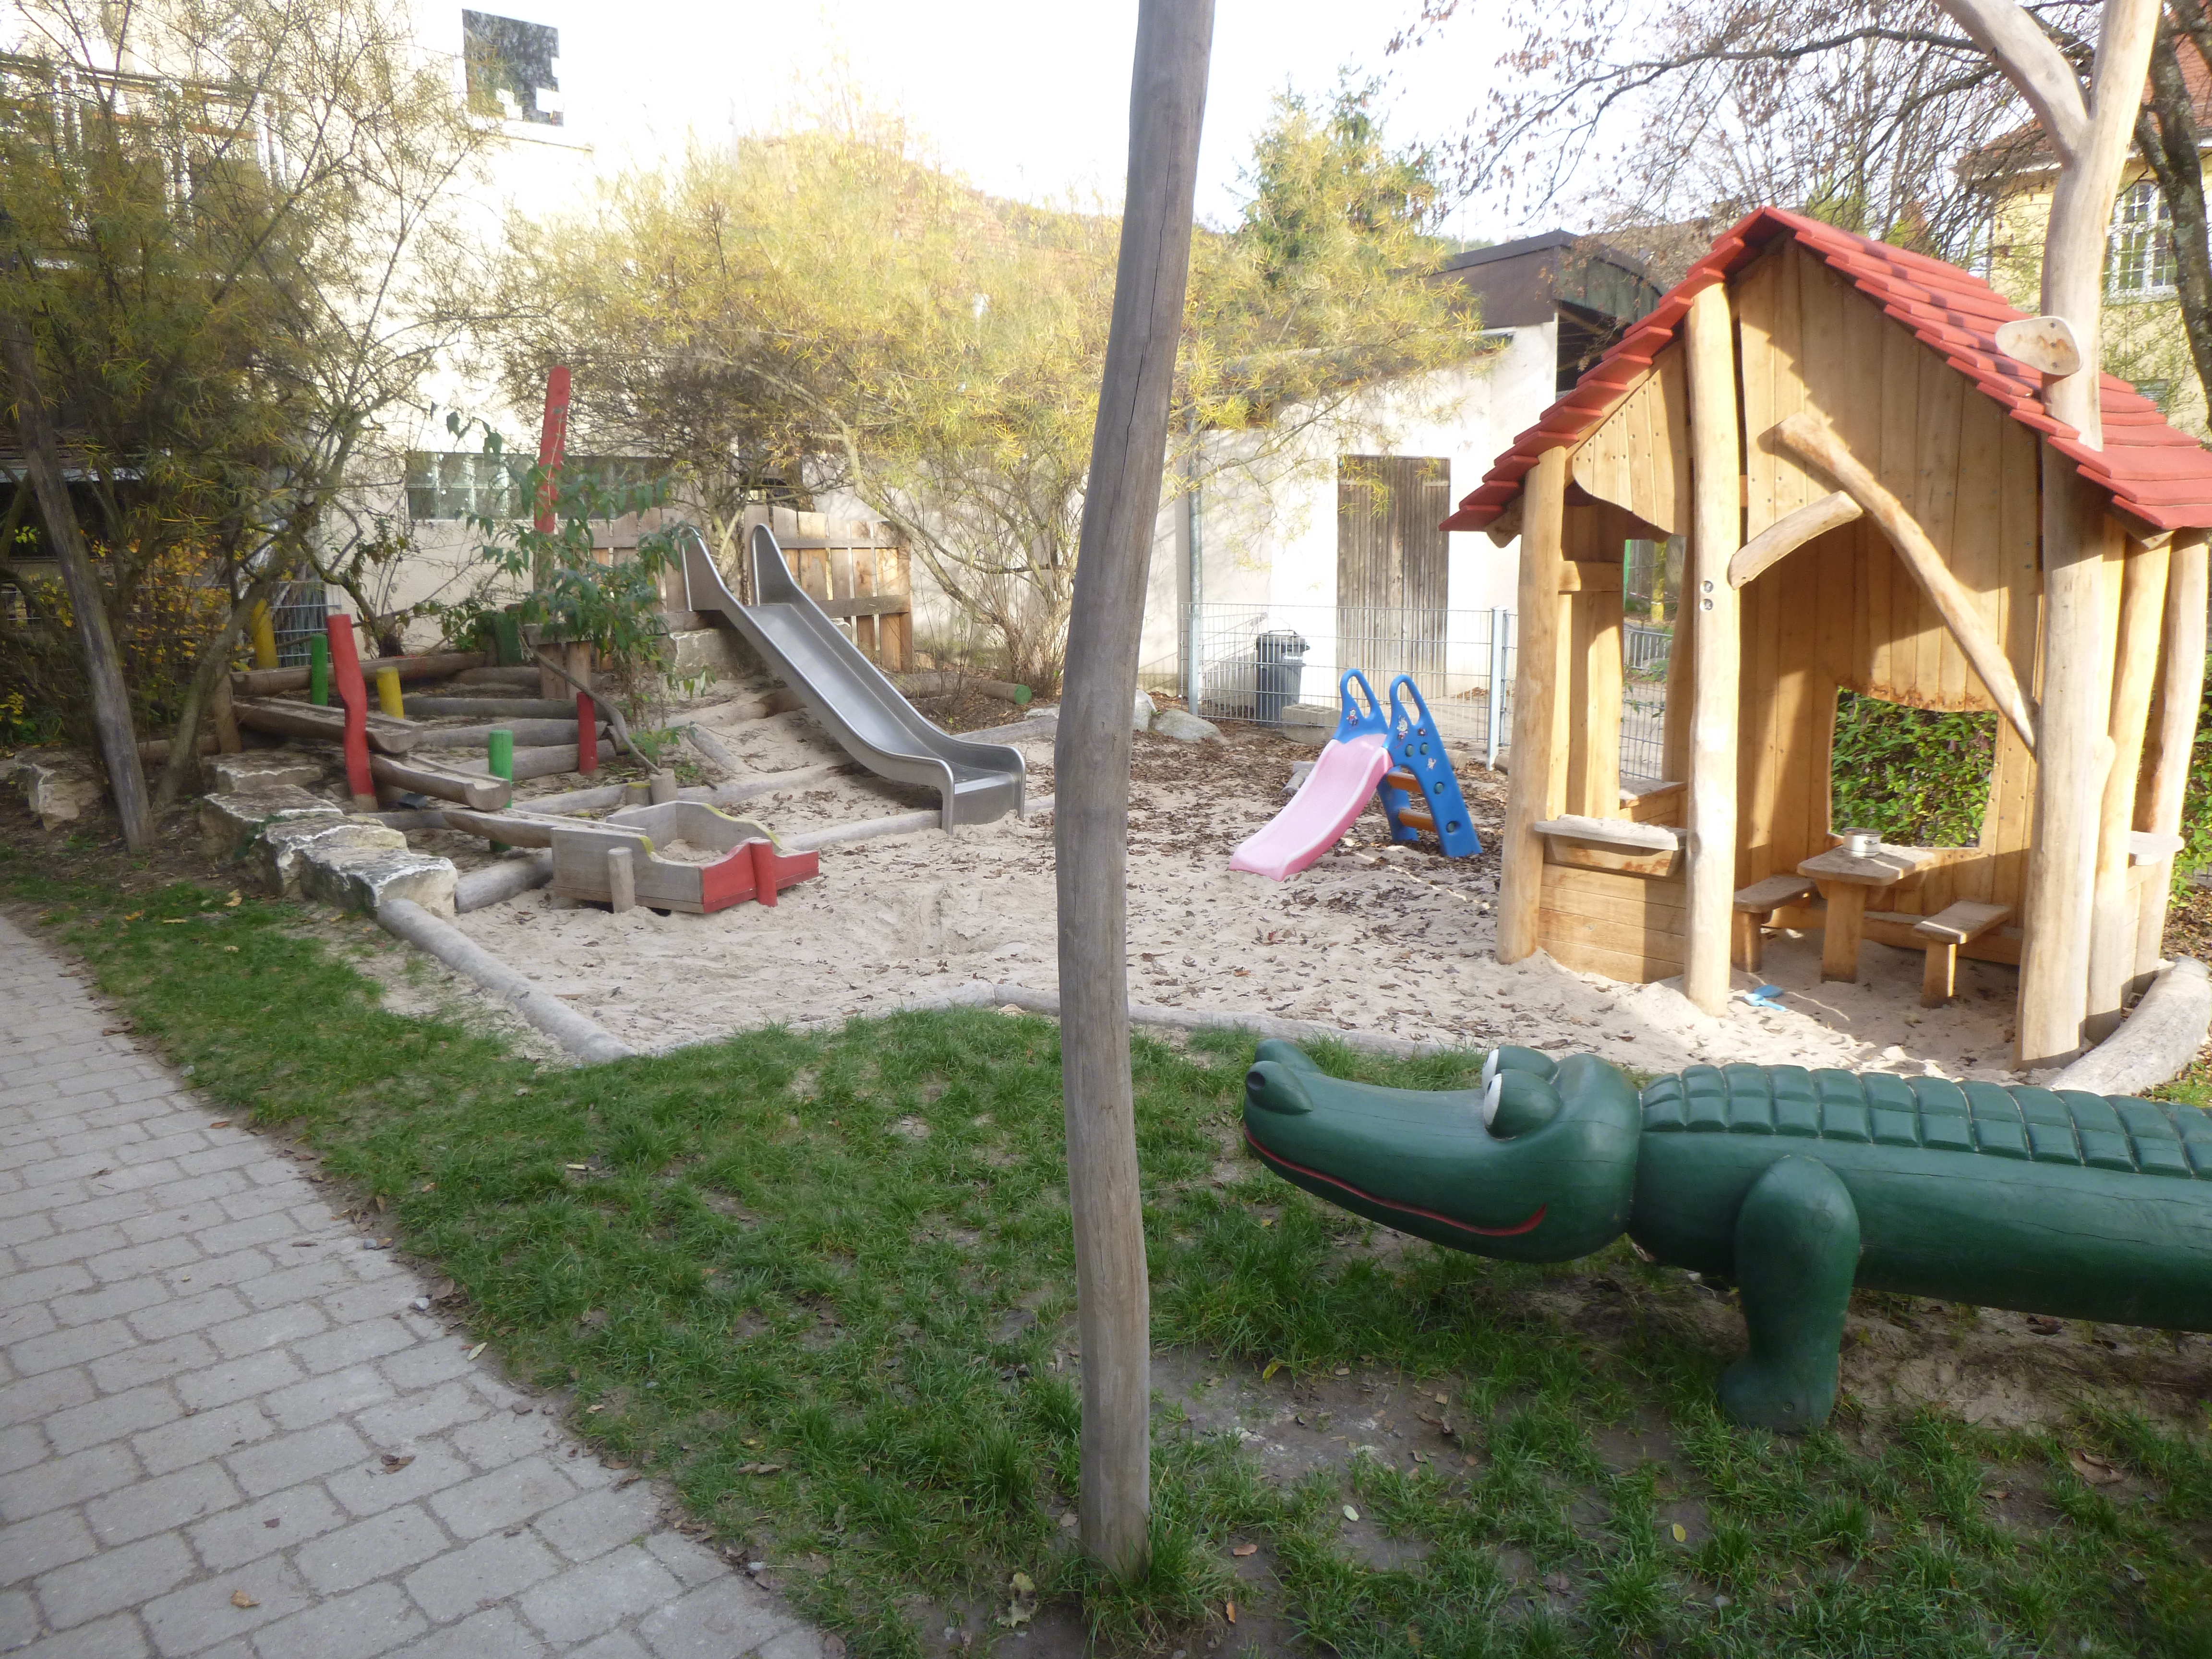 Auf dem Bild ist der Garten der Krippenkinder zu sehen. Rechts im Vordergrund ist ein Krokodil aus Holz zu sehen, dahinter ein Spielhaus aus Holz. Im Sandkasten gibt es außerdem noch zwei kleine Rutschen.